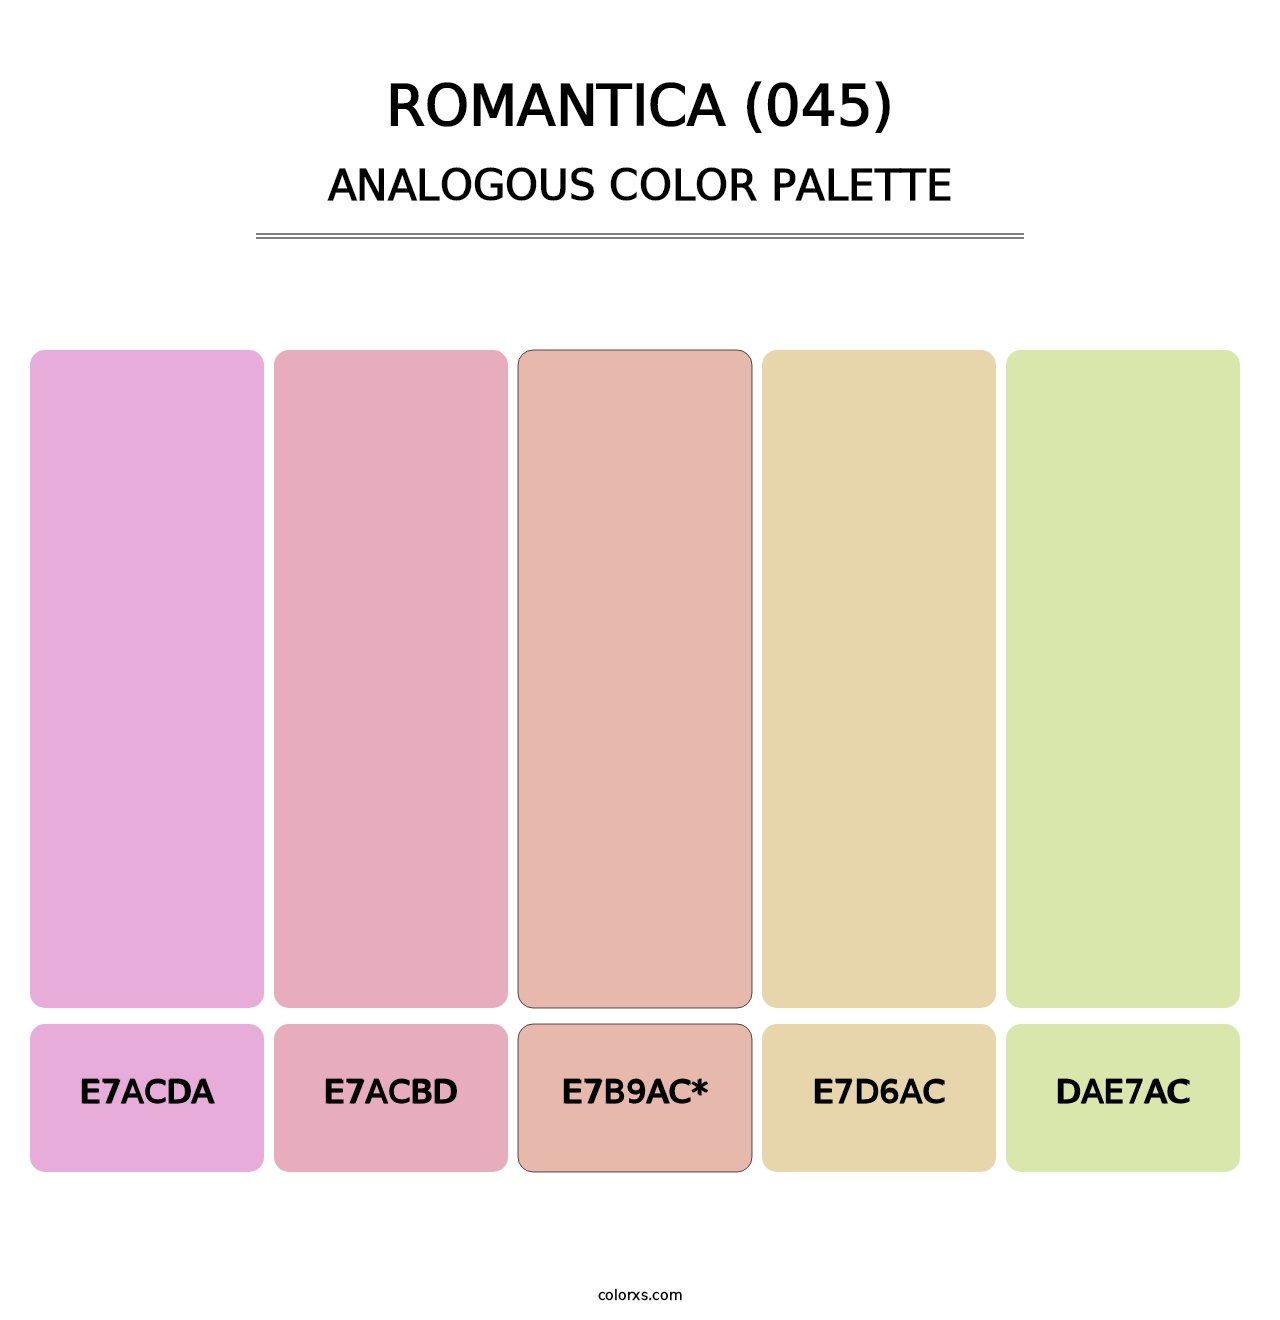 Romantica (045) - Analogous Color Palette